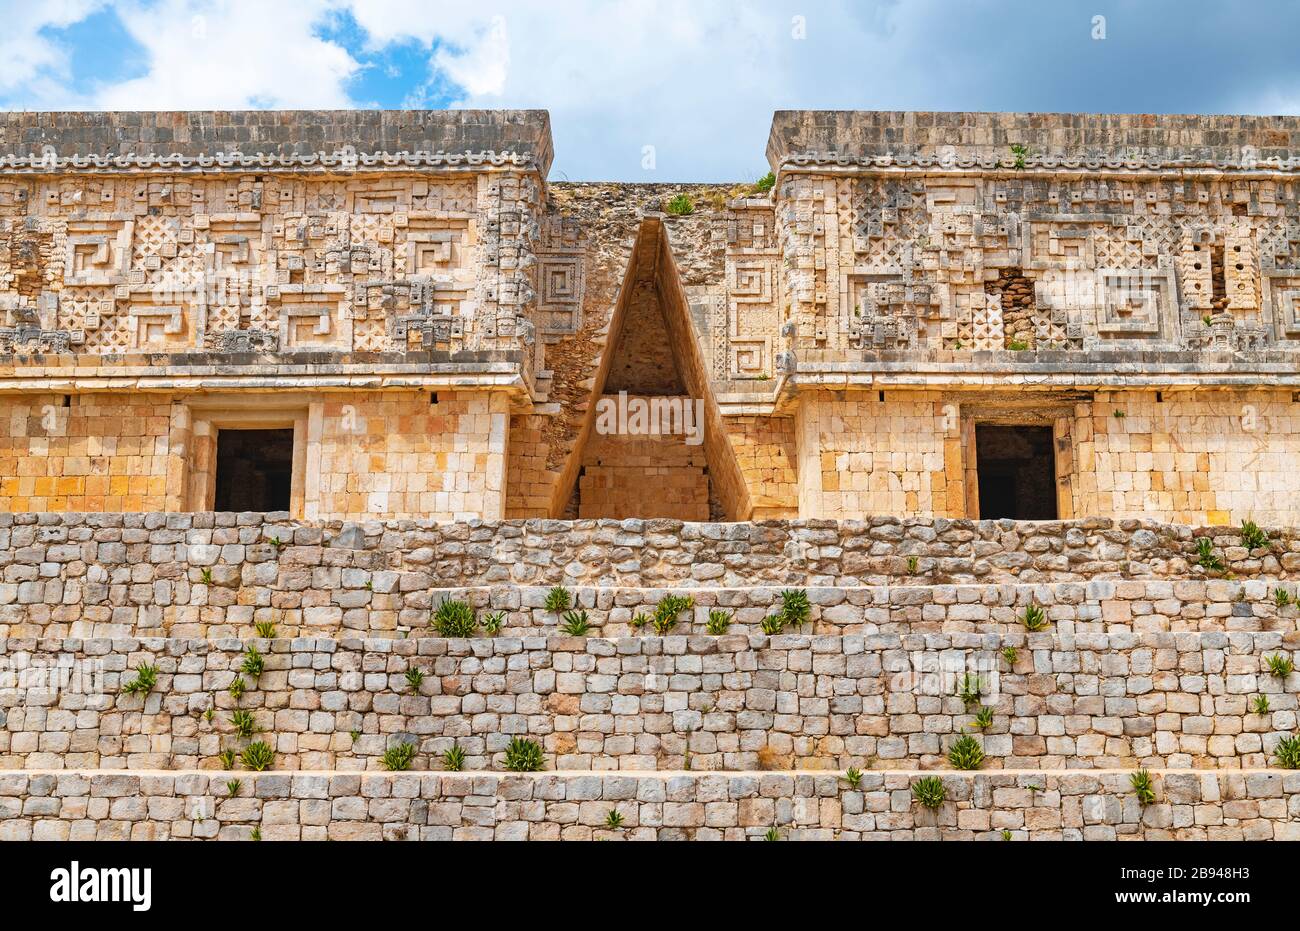 Le Palais du Gouverneur dans le site archéologique maya d'Uxmal, péninsule du Yucatan, Mexique. Banque D'Images